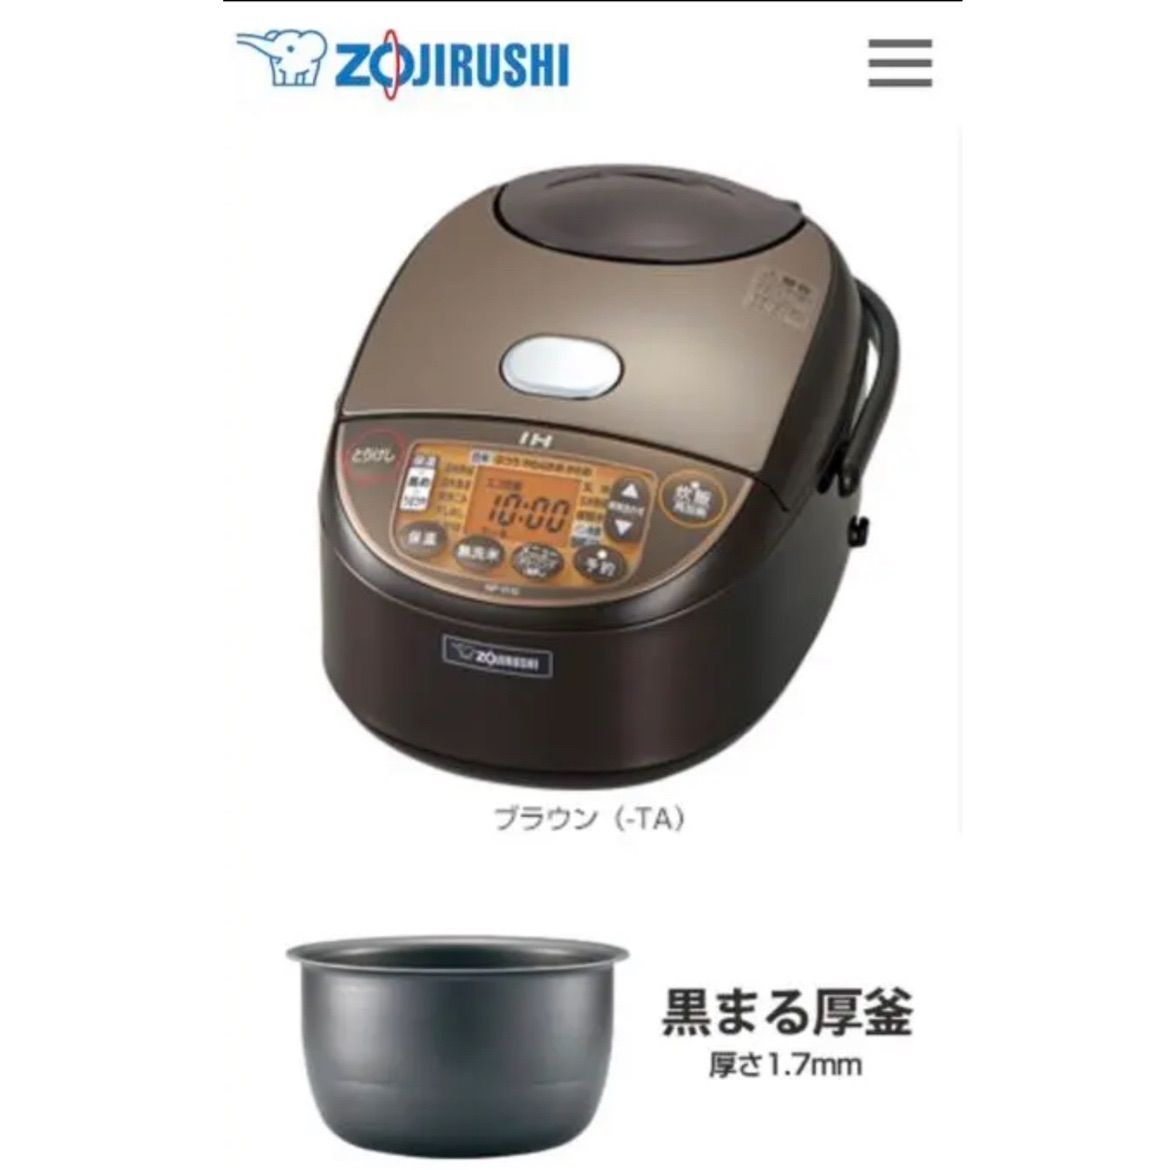 ZOJIRUSHI NP-VI10-TA - 炊飯器・餅つき機